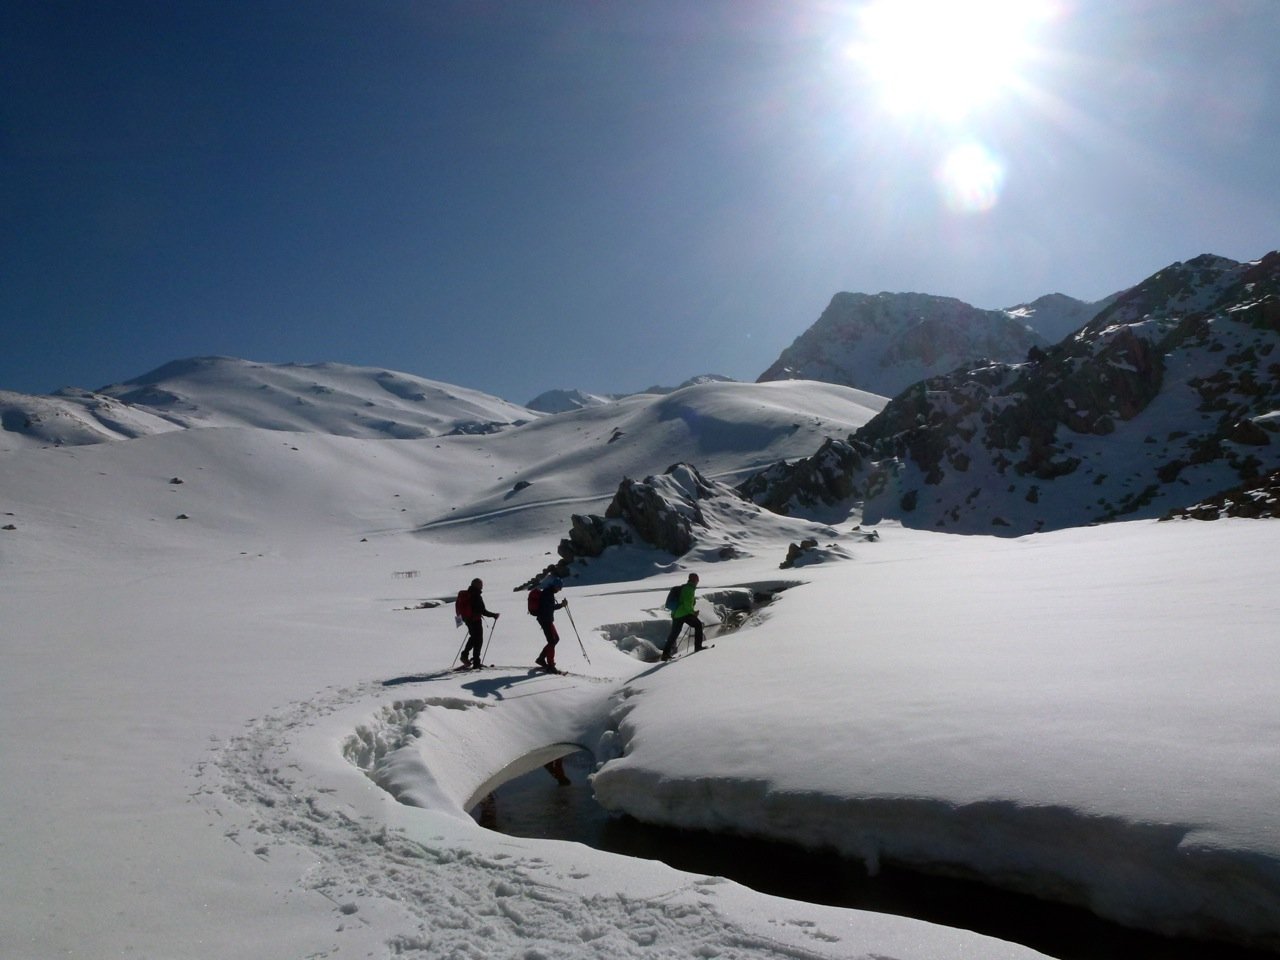 Reisebericht – Antalya / DAV Summit Club: Wenn ich im Schnee steh, brauch ich kein Meer mehr!